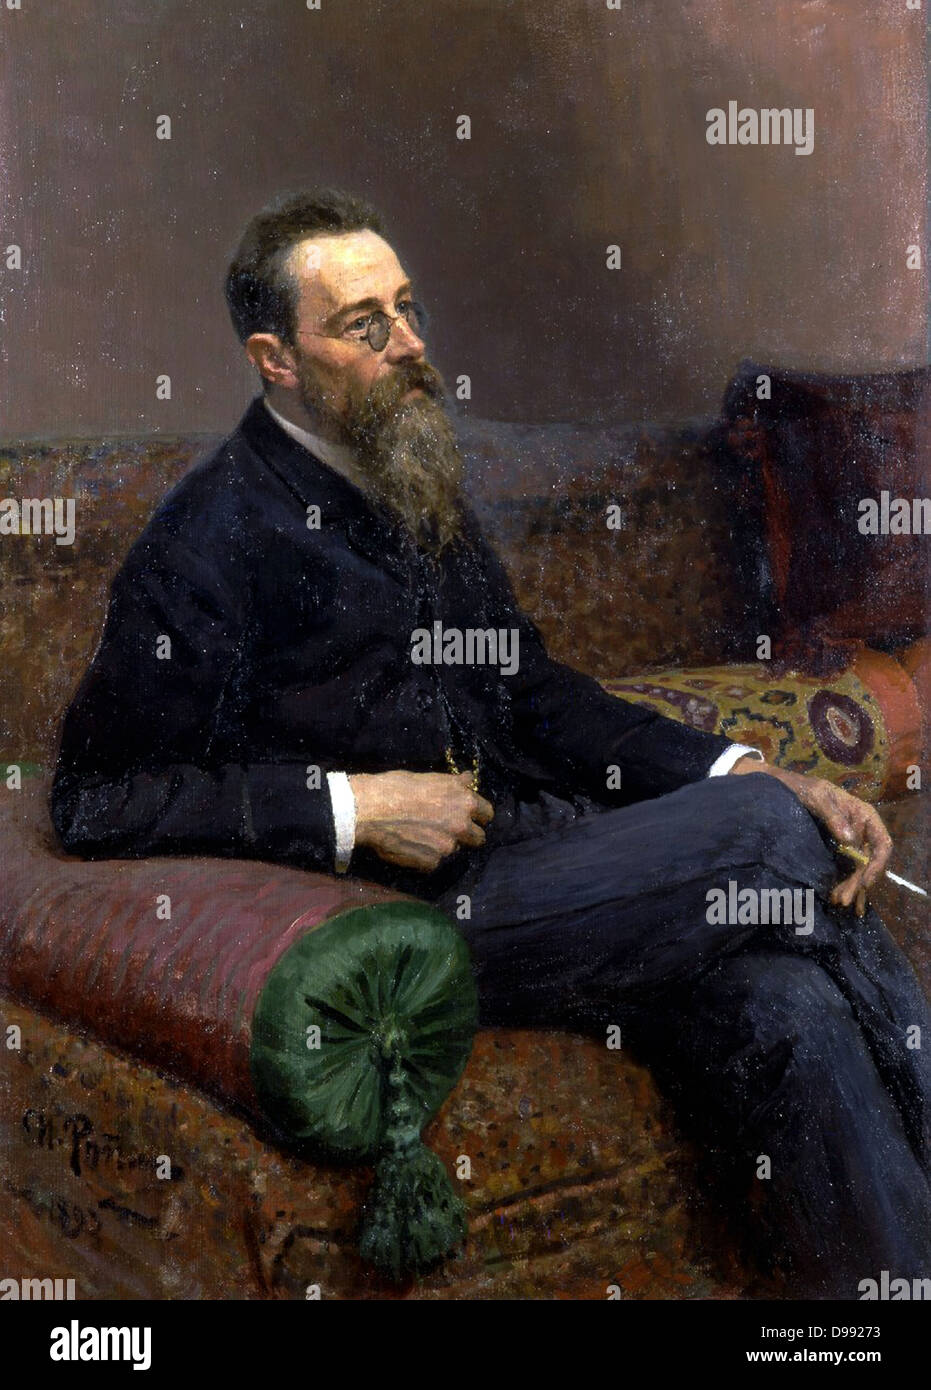 Nikolai Andreyevich Rimsky-Korsakov (1844-1908) Il compositore russo, un maestro di orchestrazione. Olio su tela. Ilya Yefimovich Repin (1844-1930). Tre quarti di ritratto, seduti sul divano a mezza girata dalla parte anteriore. Musicista di musica Foto Stock